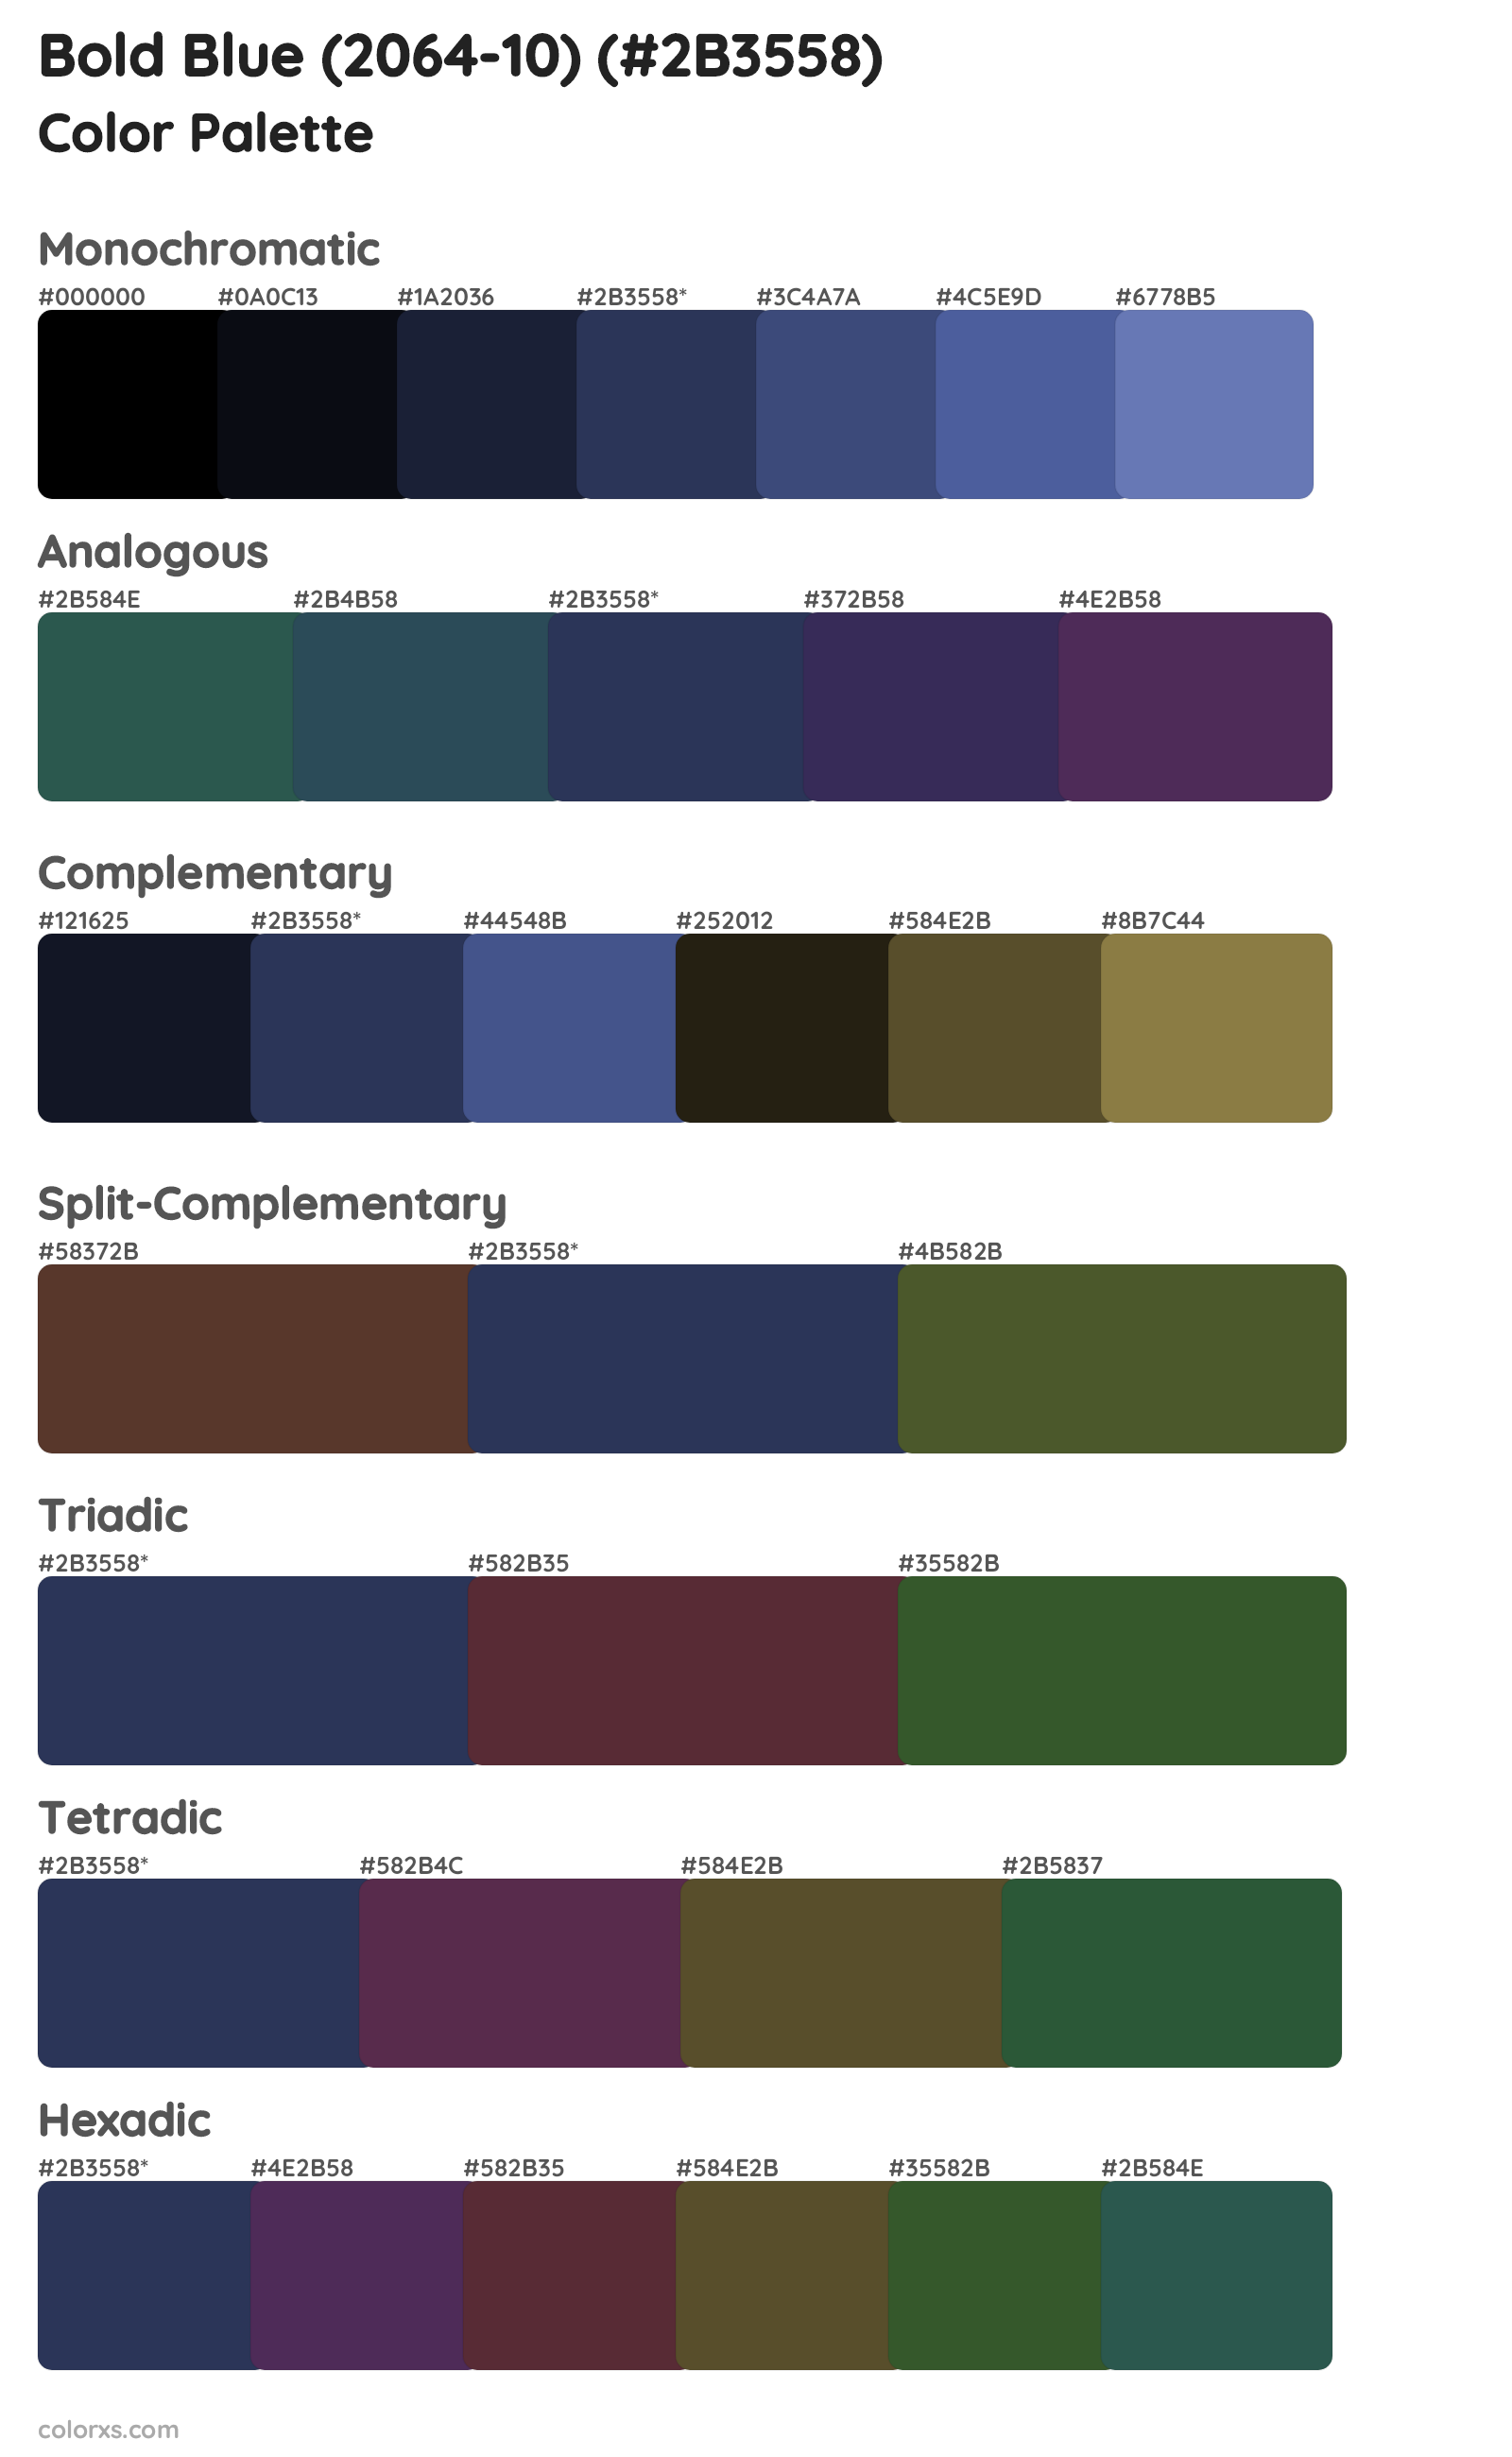 Bold Blue (2064-10) Color Scheme Palettes